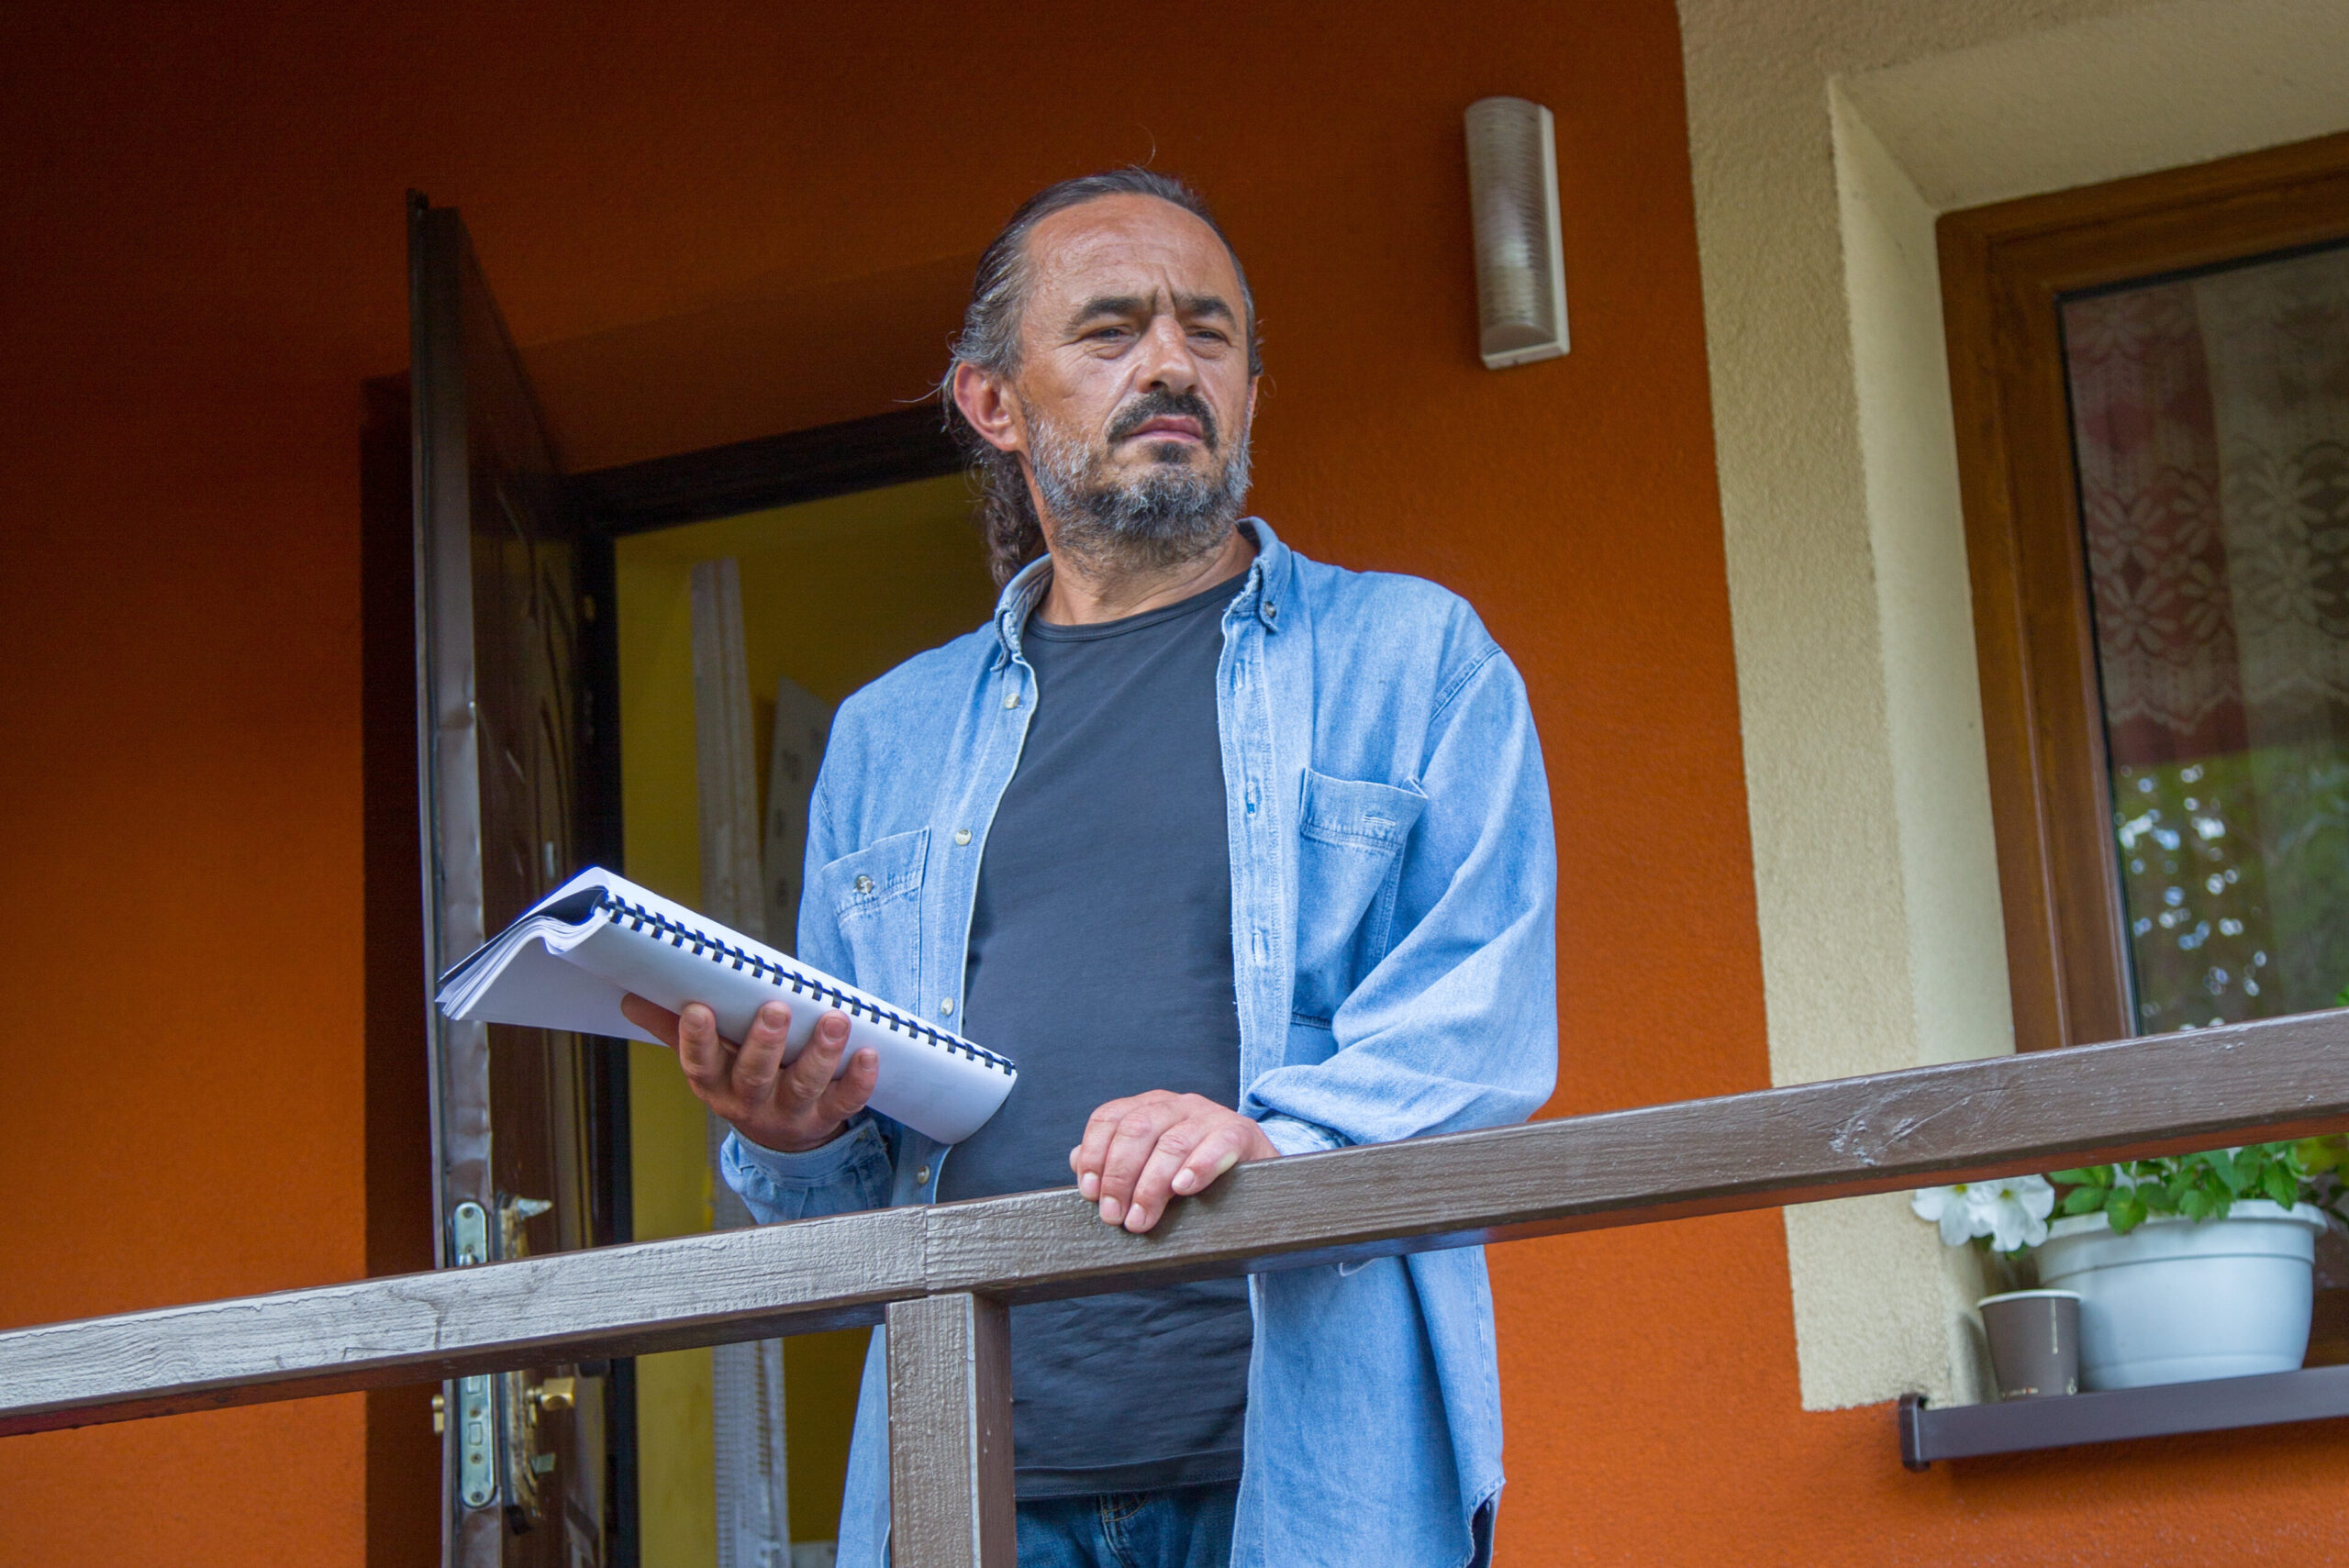 Aktor Mietek na werandzie swojego domu. W ręce trzyma scenariusz, spogląda ponad obiektyw.